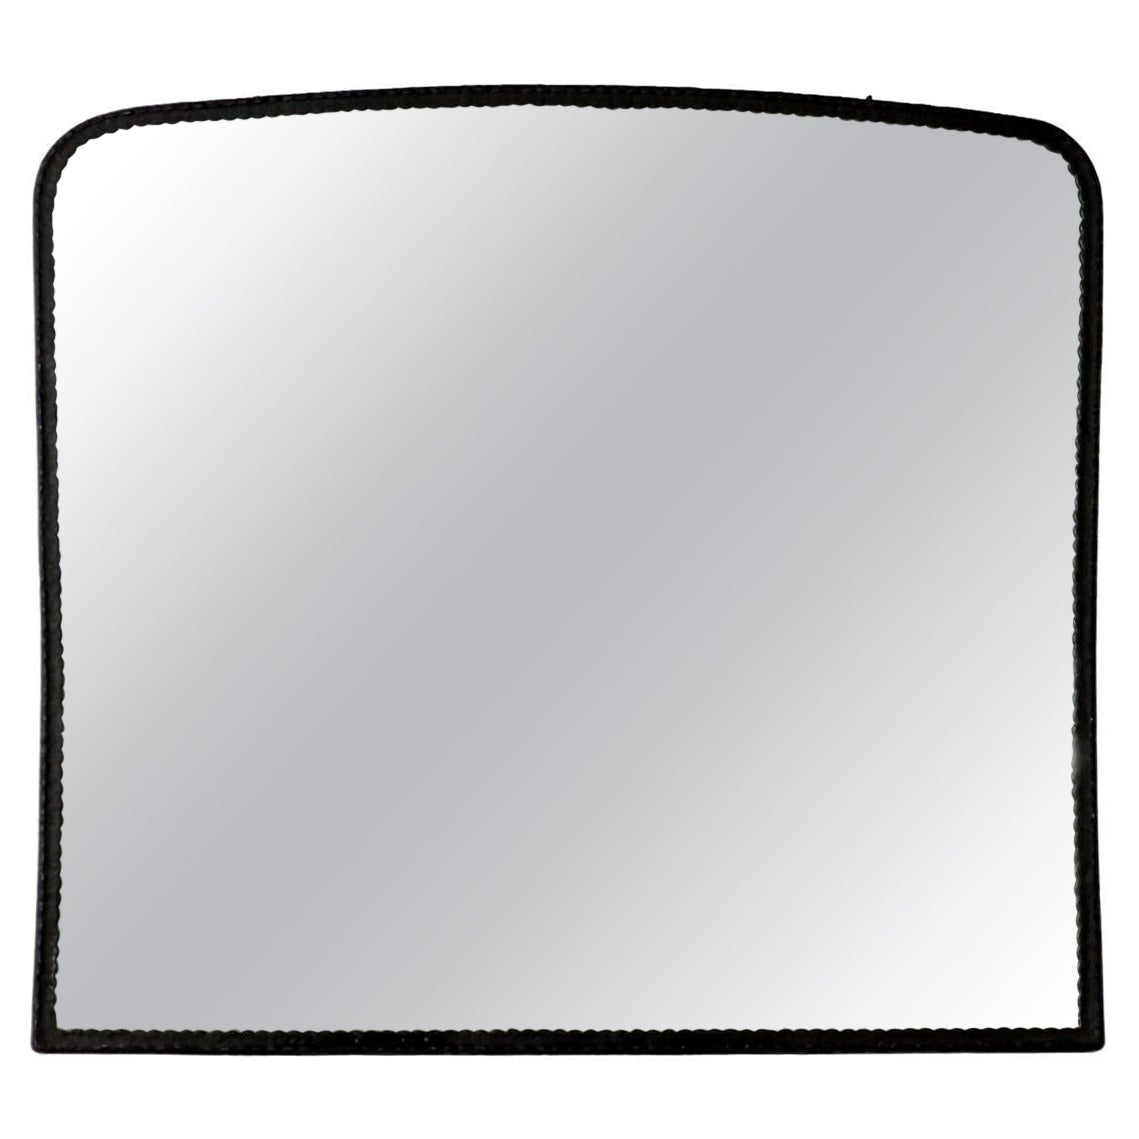 Specchio Anni 60 rettangolare